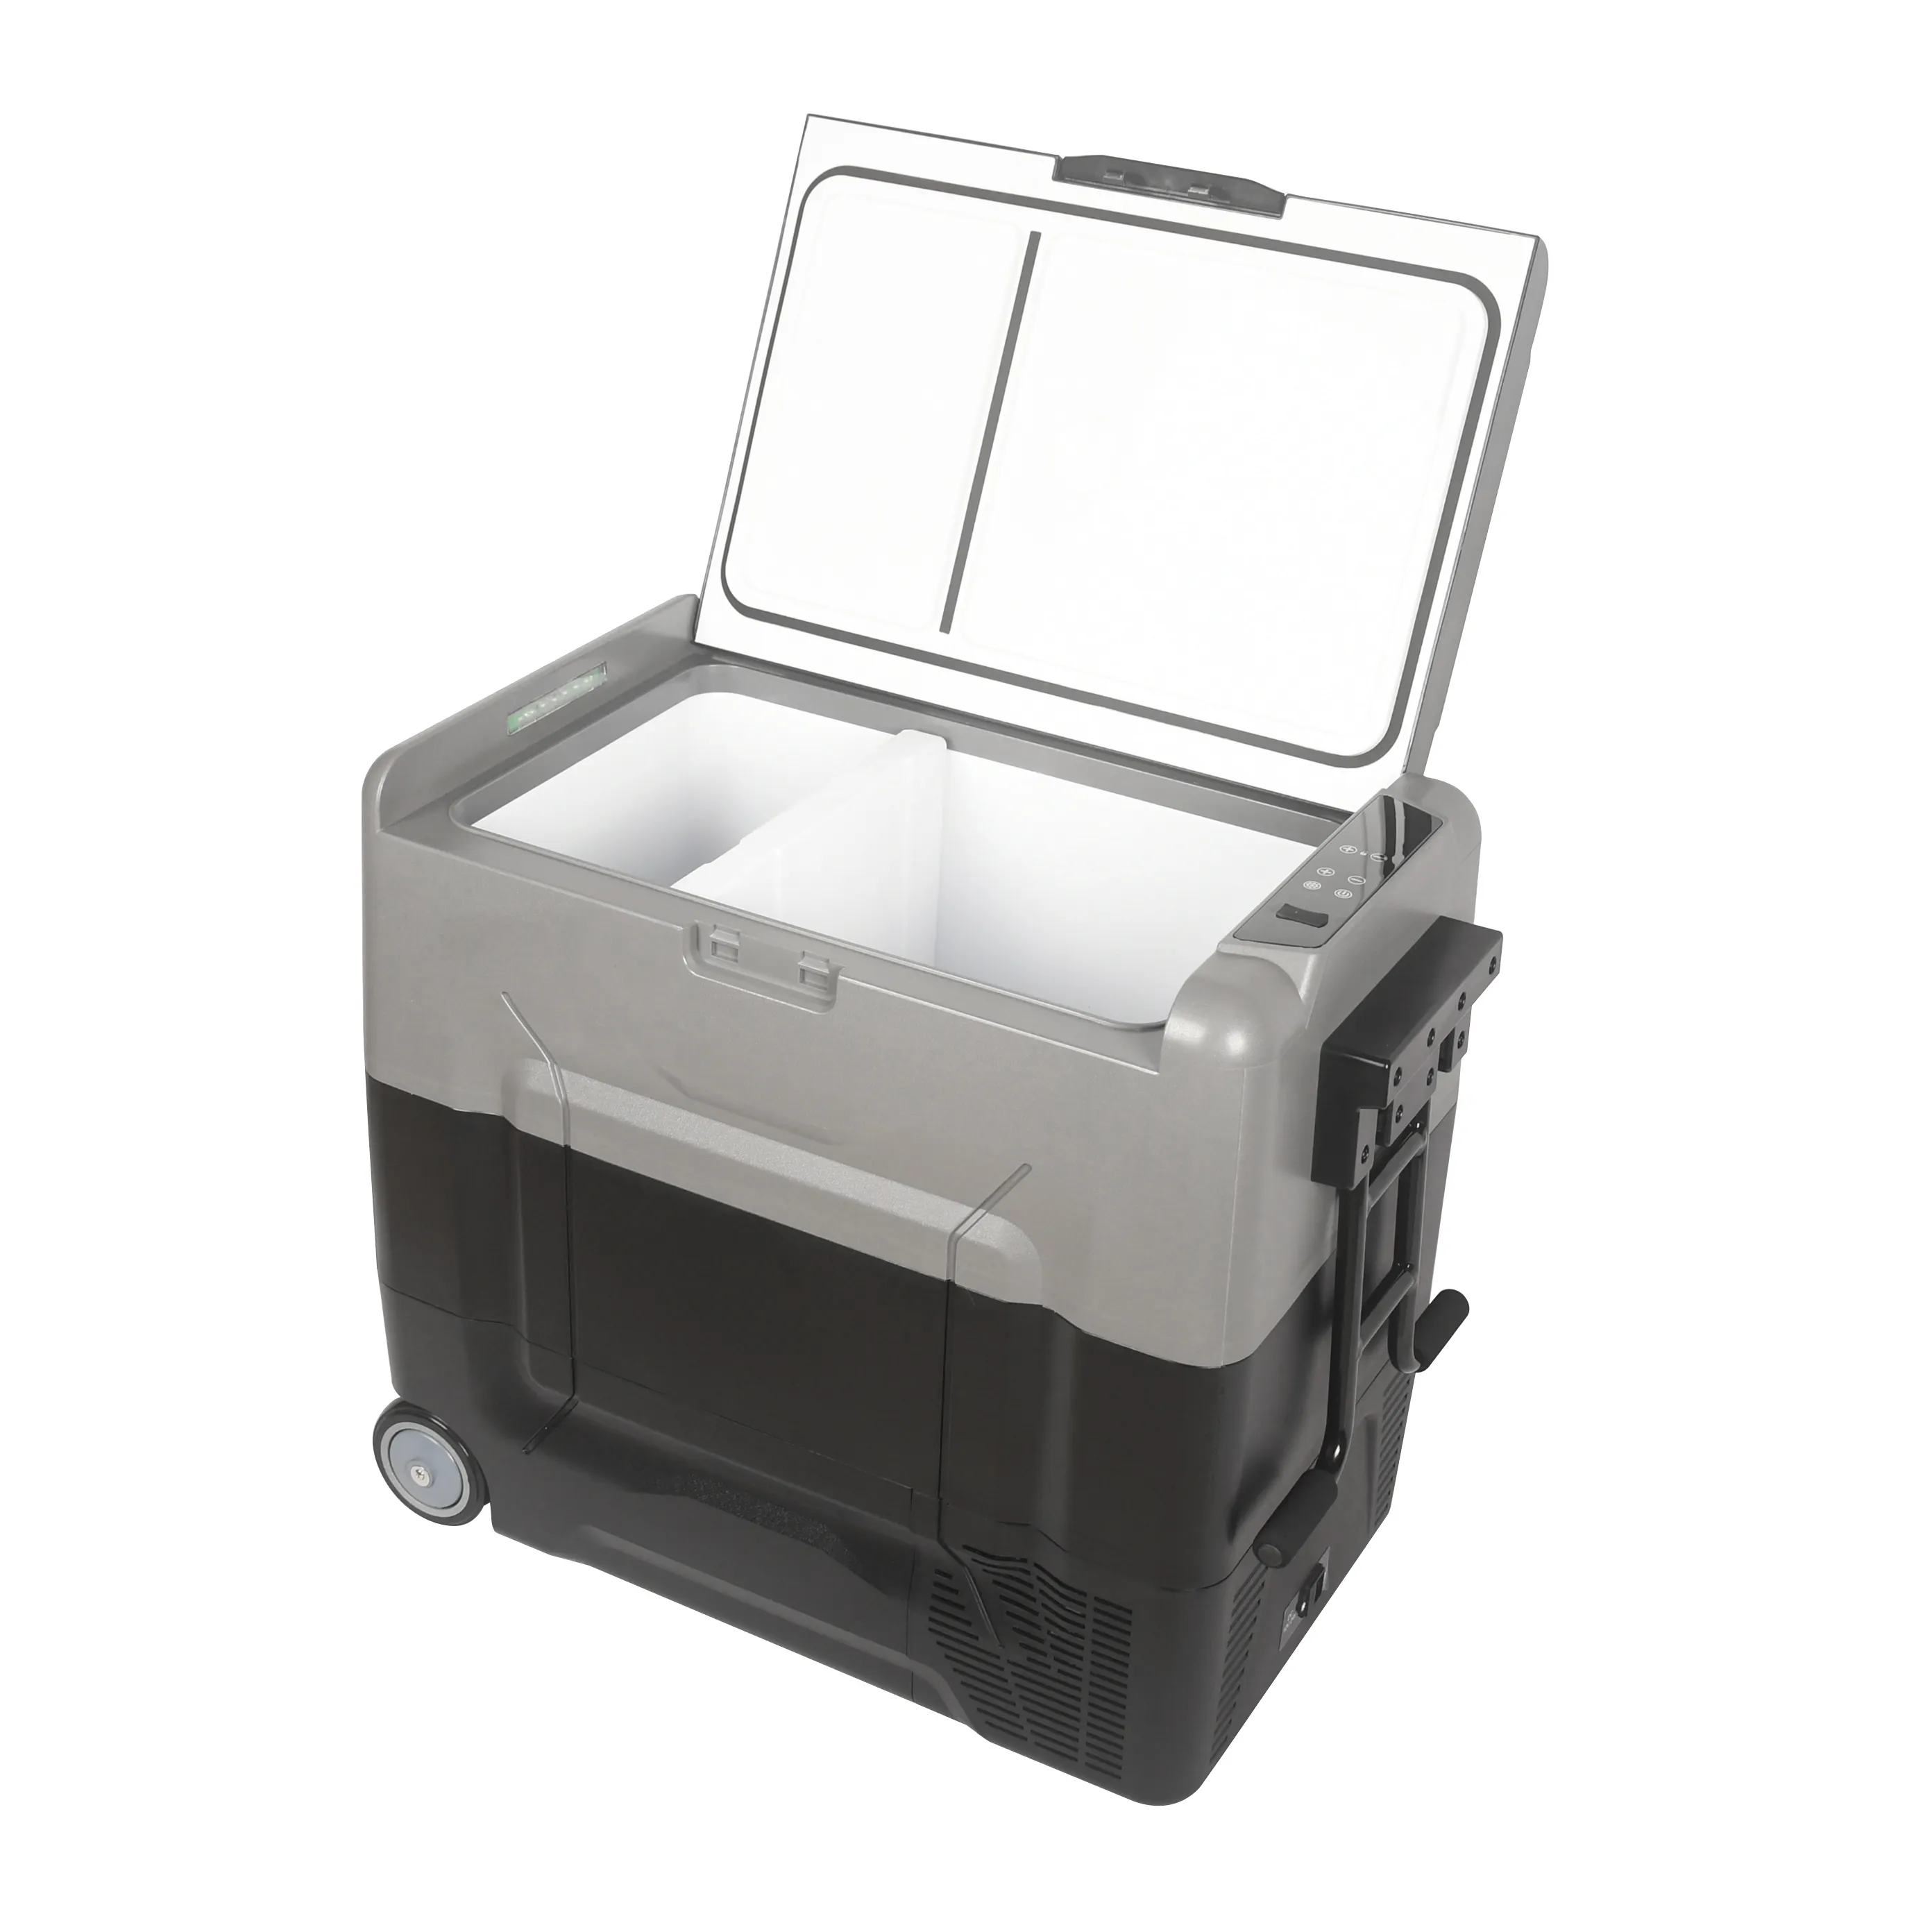 Don aperatif dc güç basit buz göğüs balıkçılık hareketli buzdolabı araba için